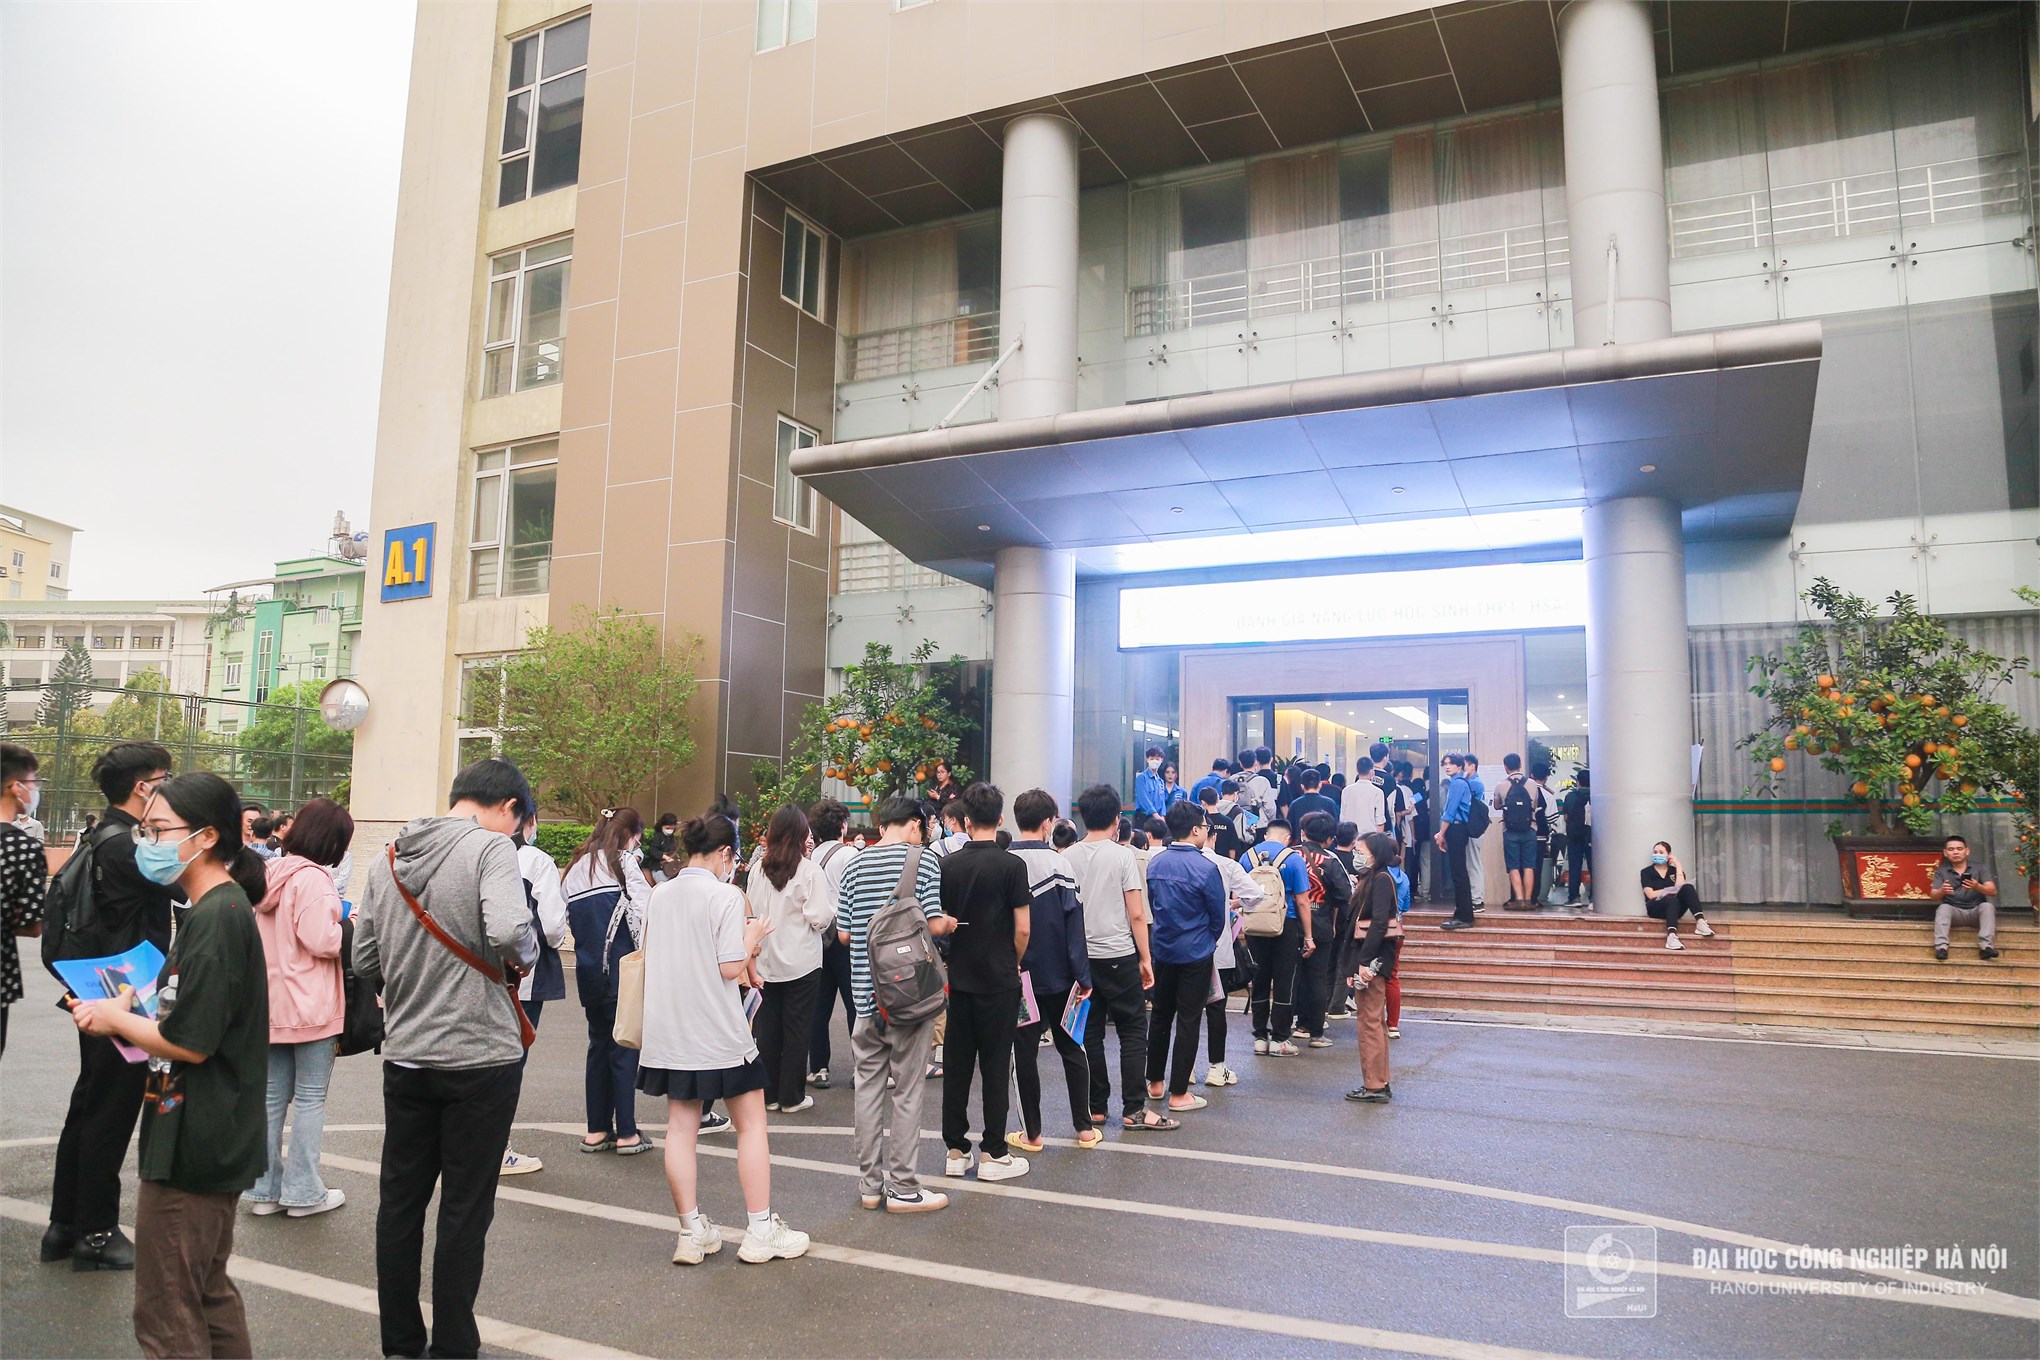 Đại học Công nghiệp Hà Nội phối hợp tổ chức thi đánh giá năng lực học sinh Trung học phô thông